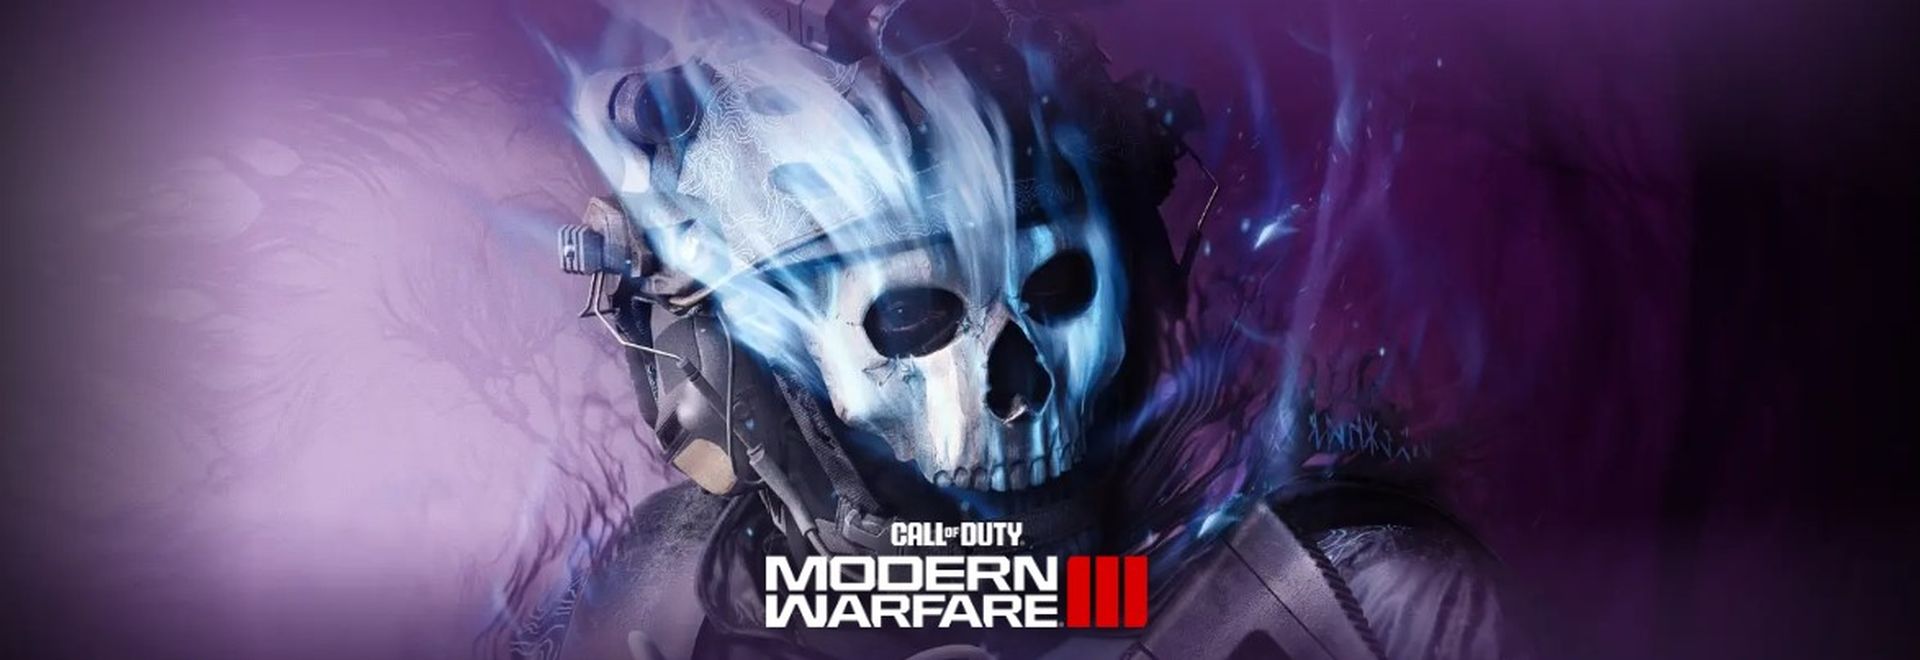 Kostenlose Multiplayer-Testversion von Call of Duty Modern Warfare 3 jetzt verfügbar